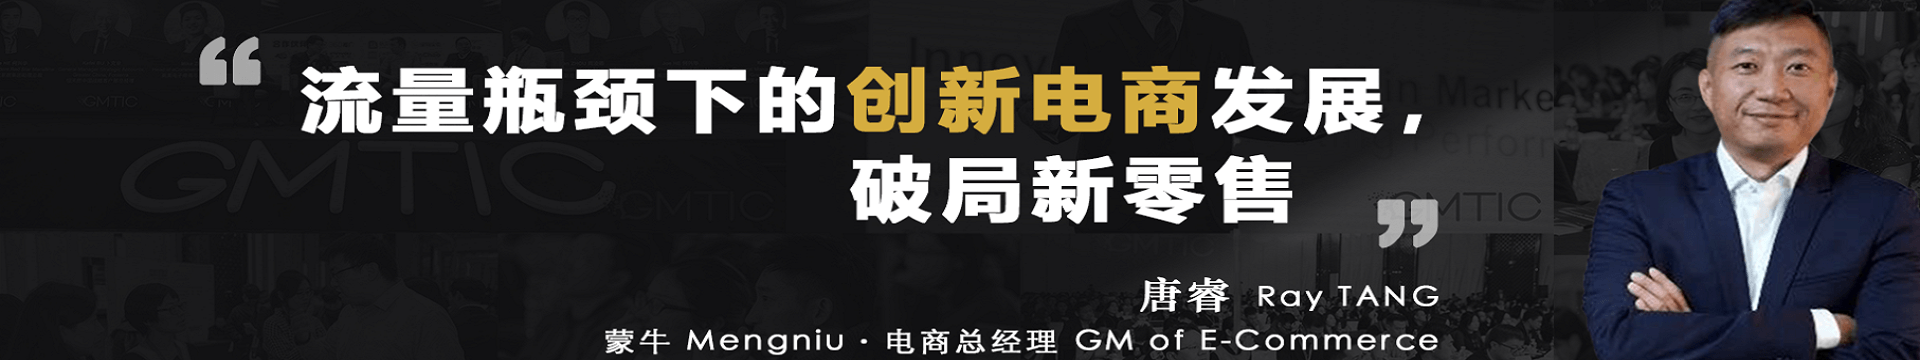 第三届GMTIC全球营销技术及零售创新峰会（上海）